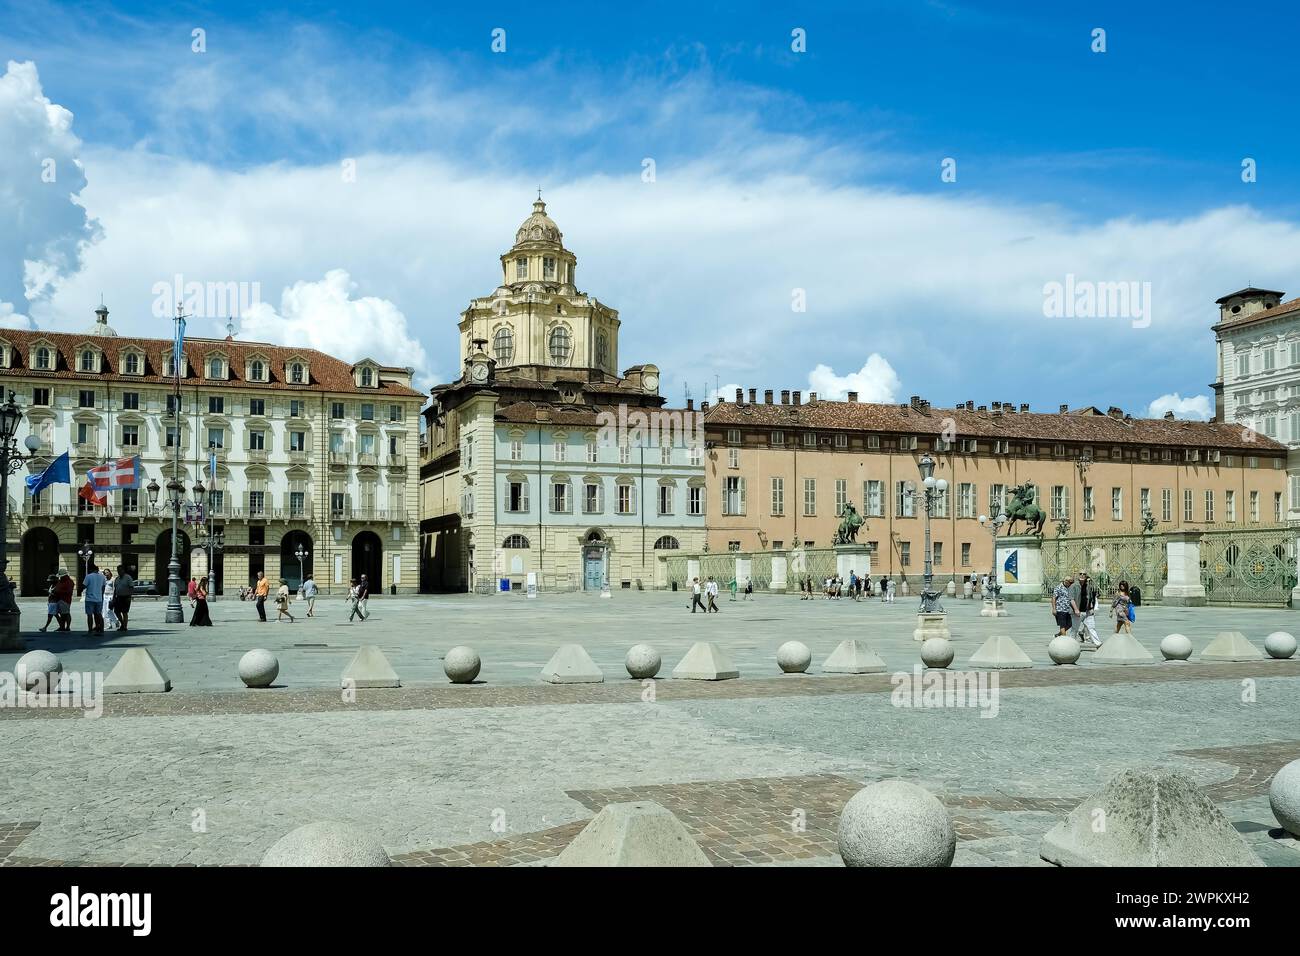 Vue de Piazza Castello, une place importante avec plusieurs complexes architecturaux importants et périmètre de portiques et façades élégants, Turin, pied Banque D'Images